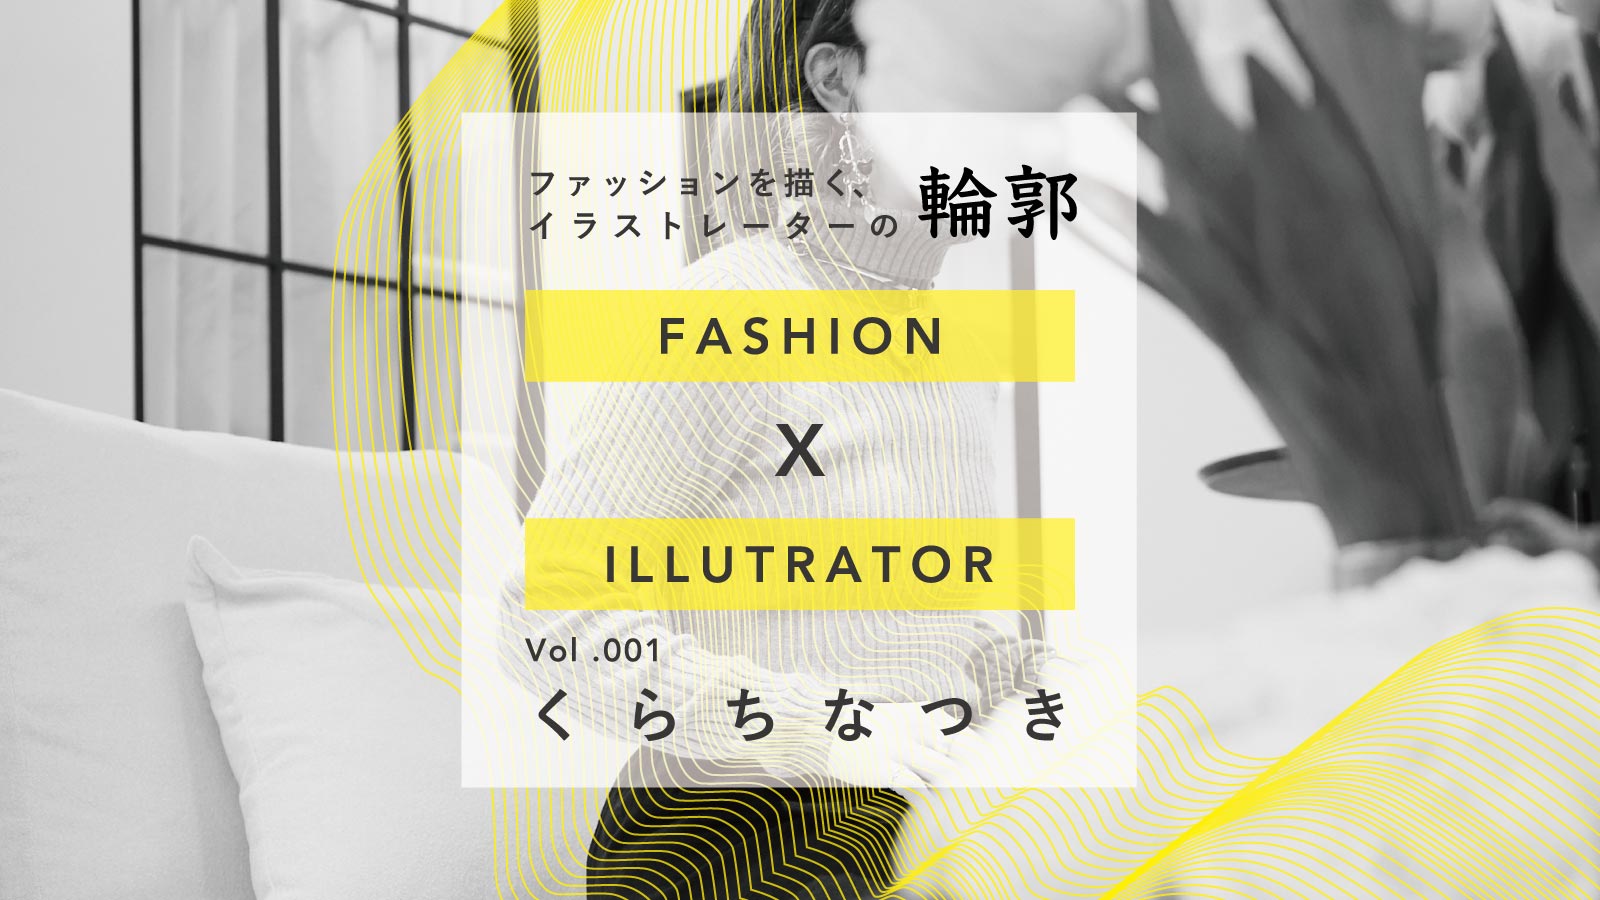 苦手が生んだ魅力 くらちなつき ファッションを描く イラストレーターの輪郭 Vol 1 Ready To Fashion Mag